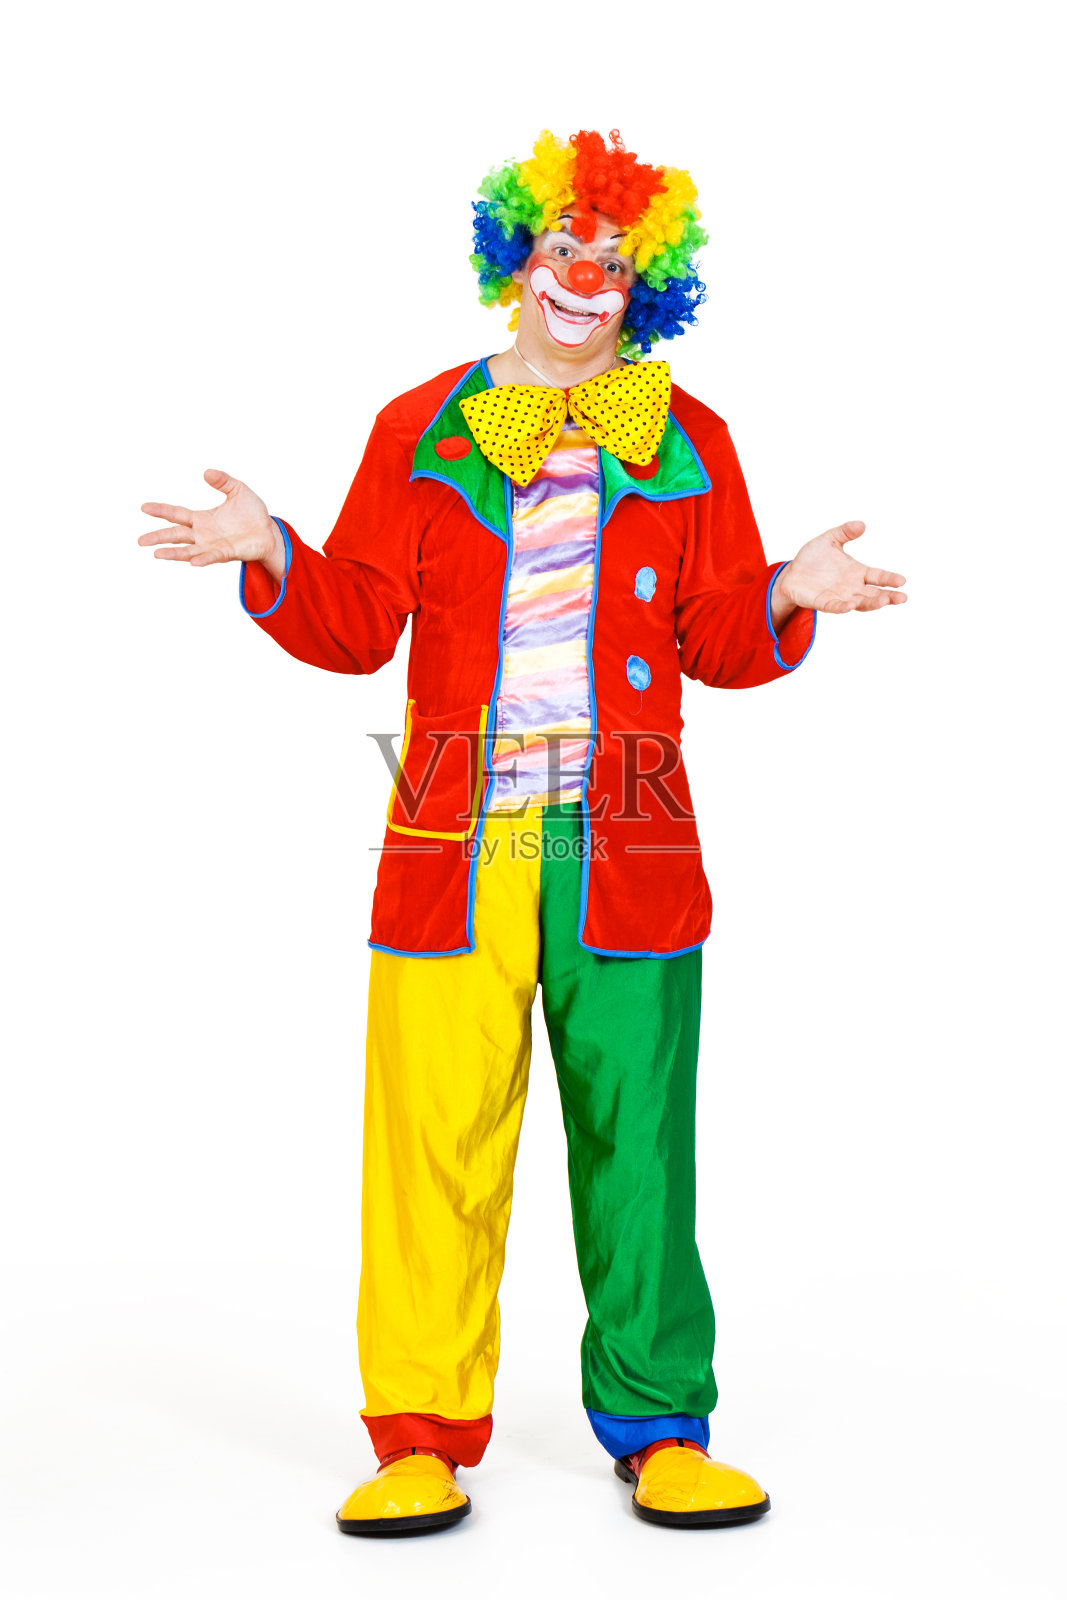 滑稽的男性小丑在五颜六色的服装照片摄影图片